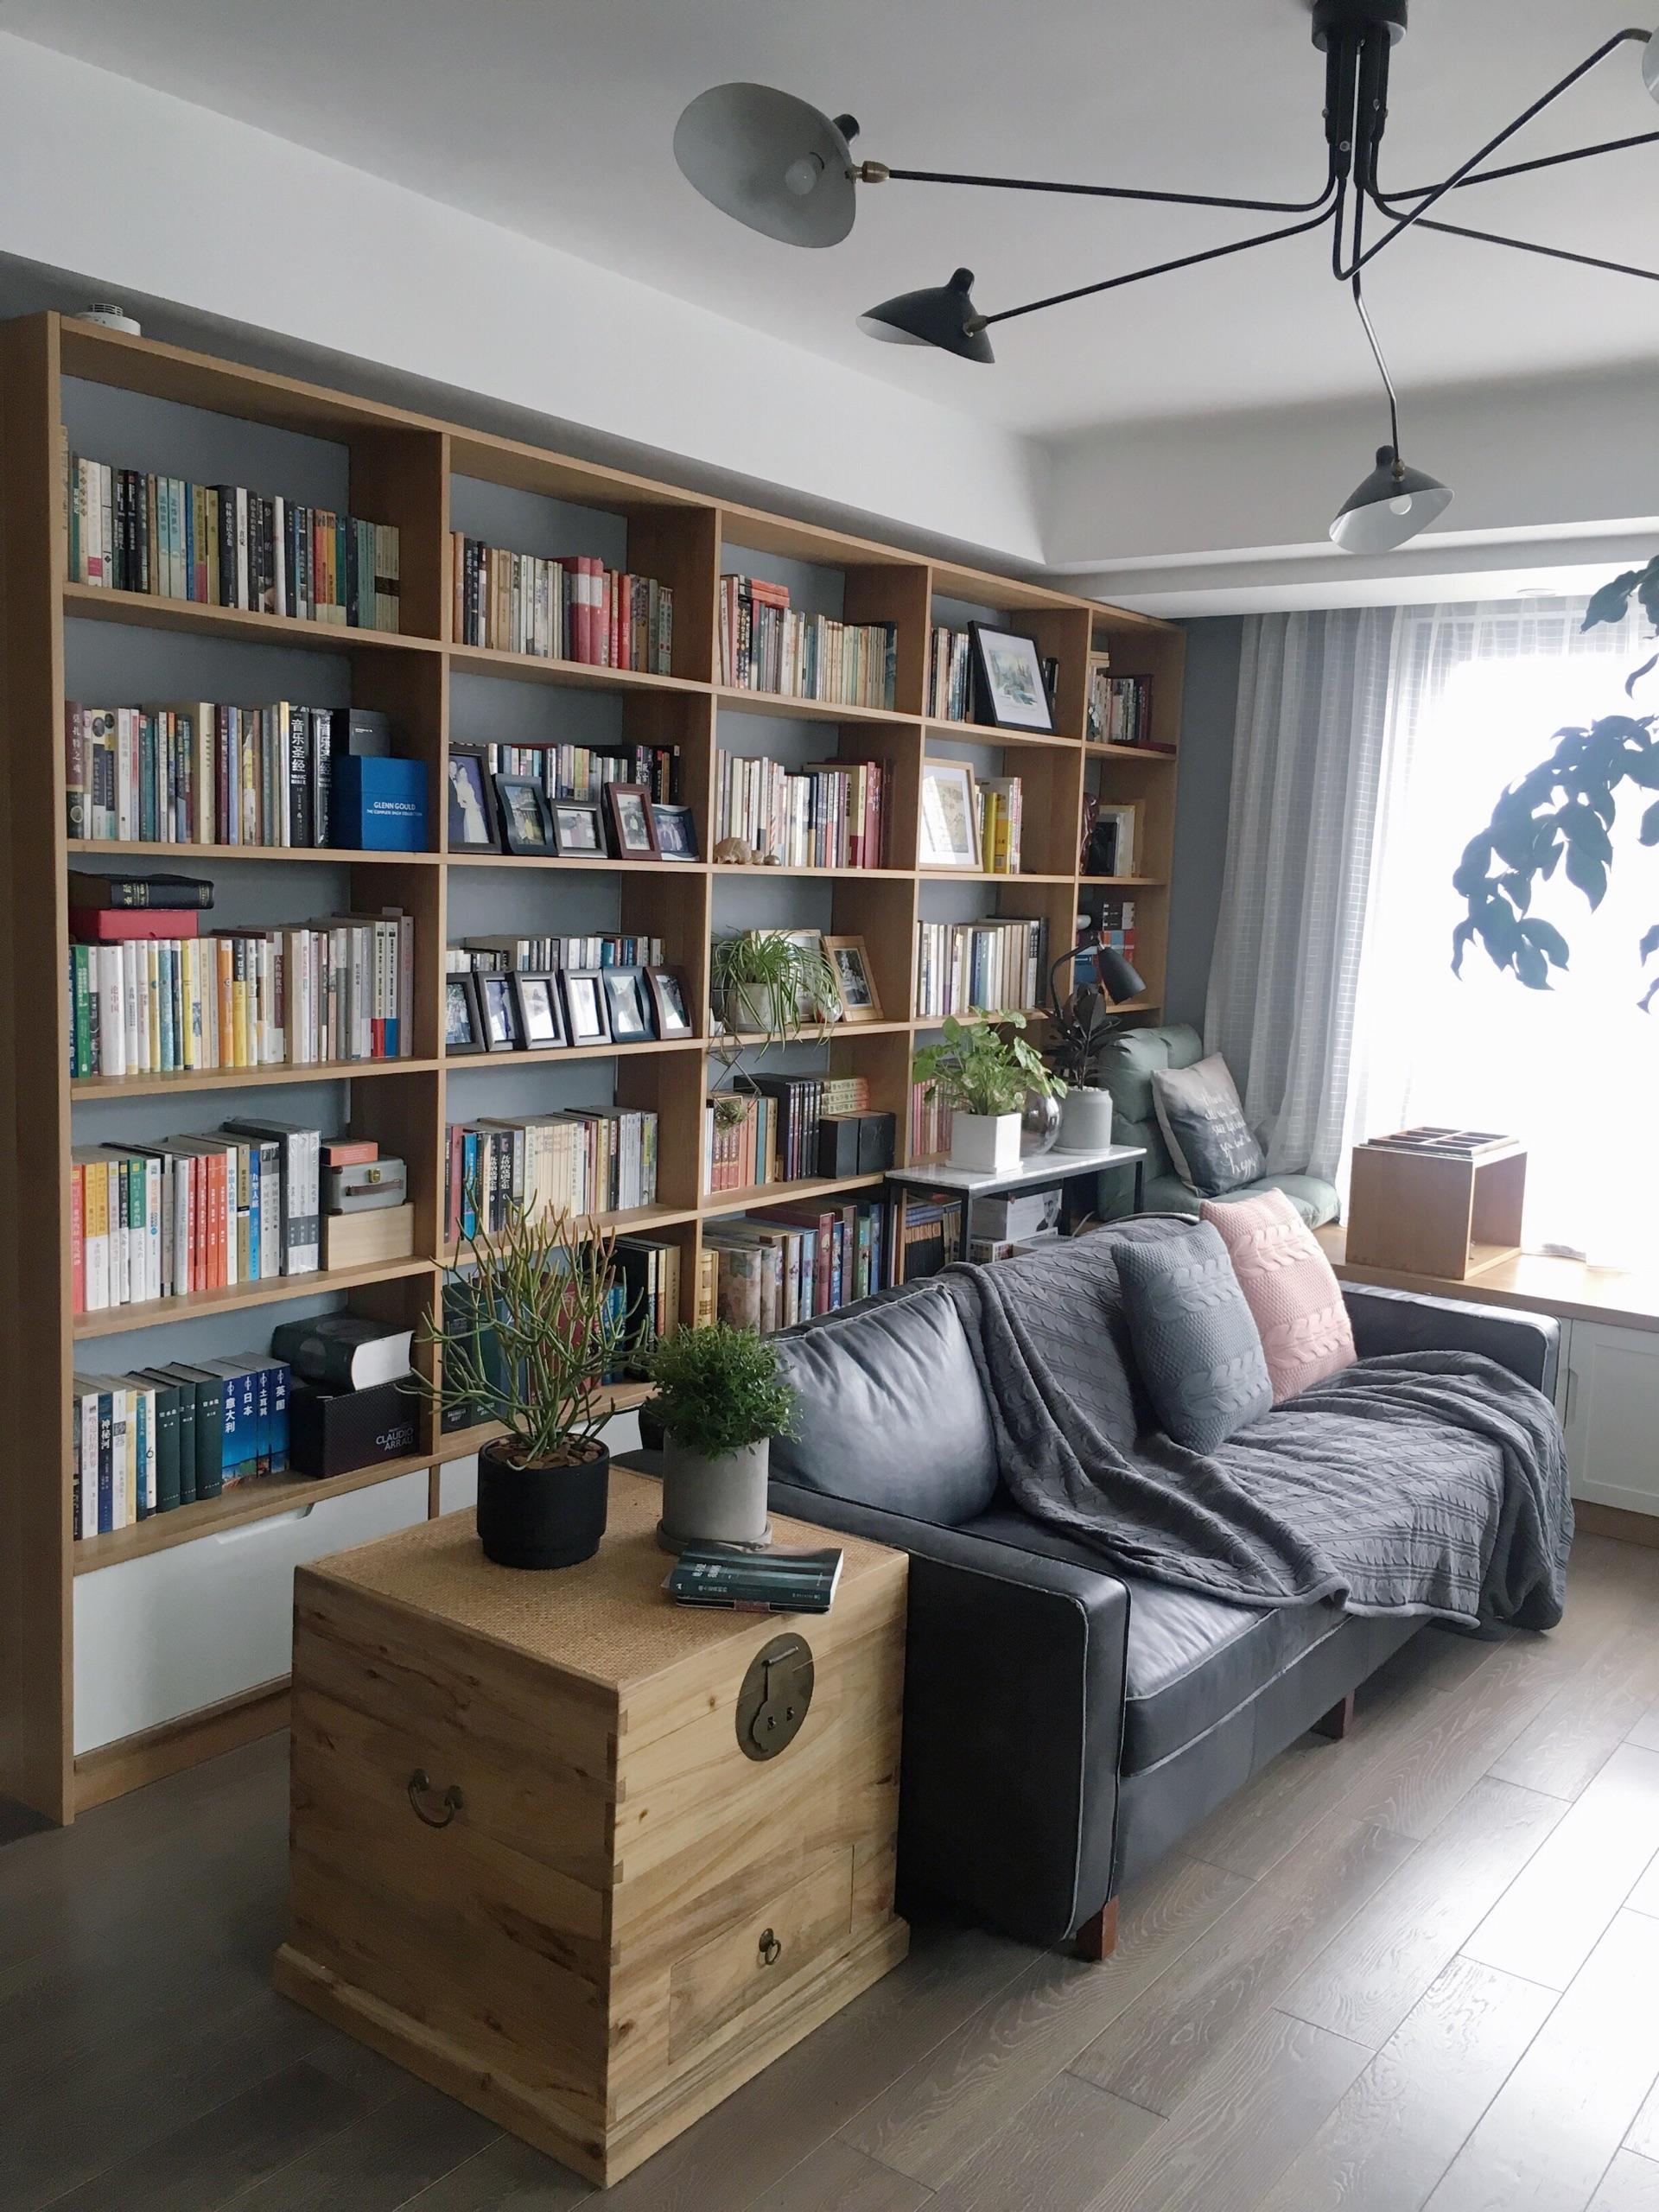 客厅与书房一体设计,反正平时几乎不看电视